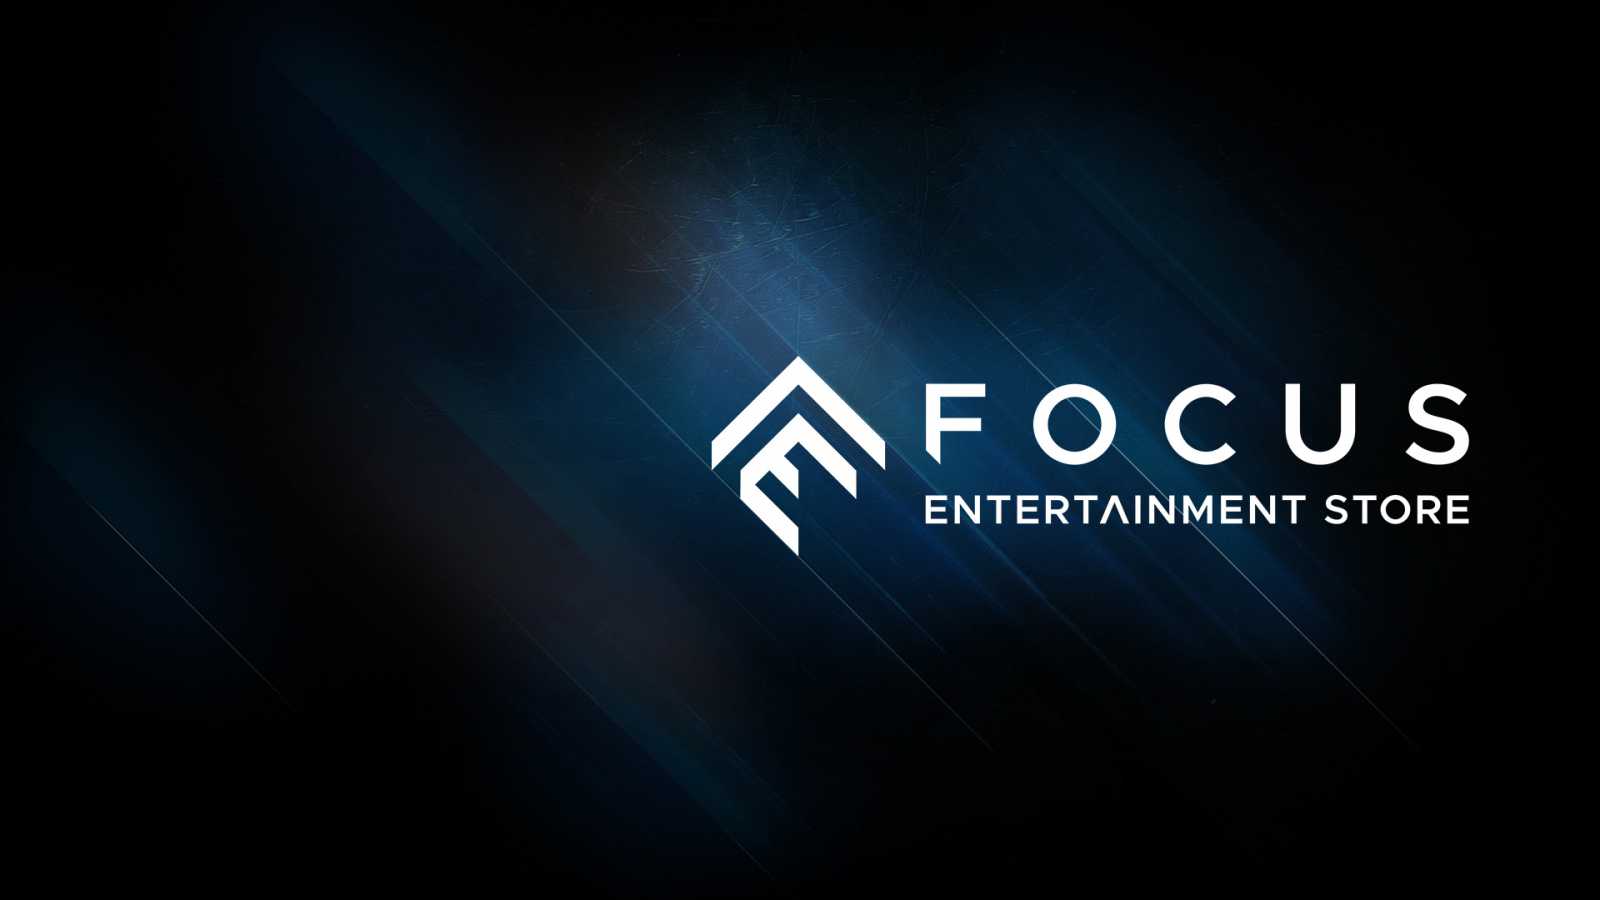 Focus Entertainment spouští vlastní obchod. Jako odměnu za registraci nabízí The Surge